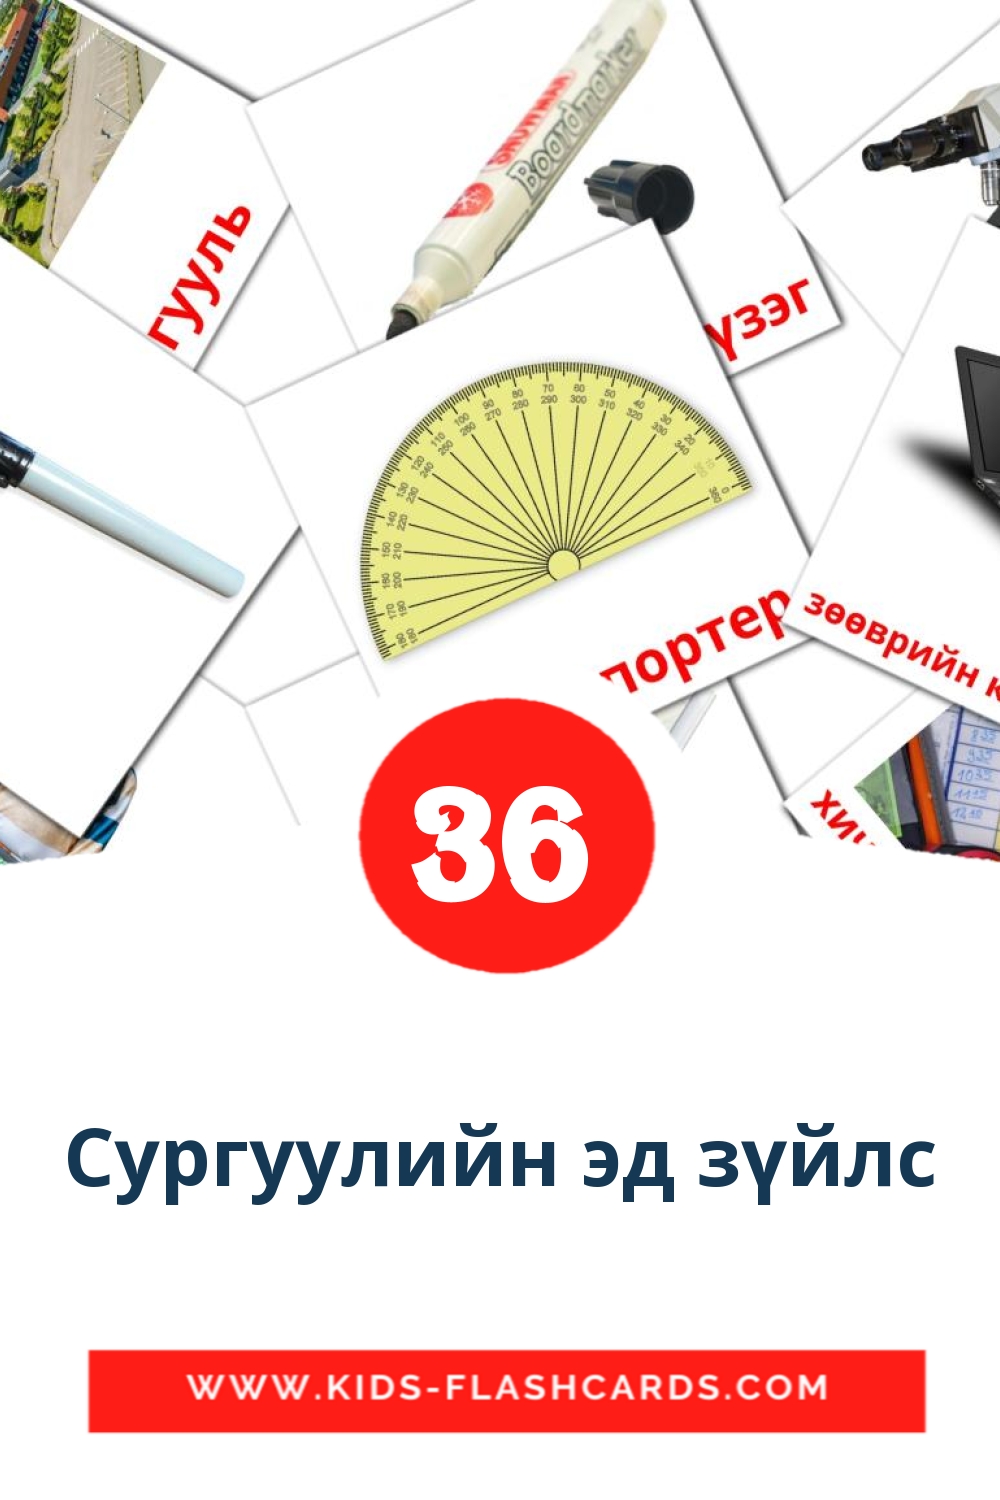 Сургуулийн эд зүйлс на монгольском для Детского Сада (36 карточек)